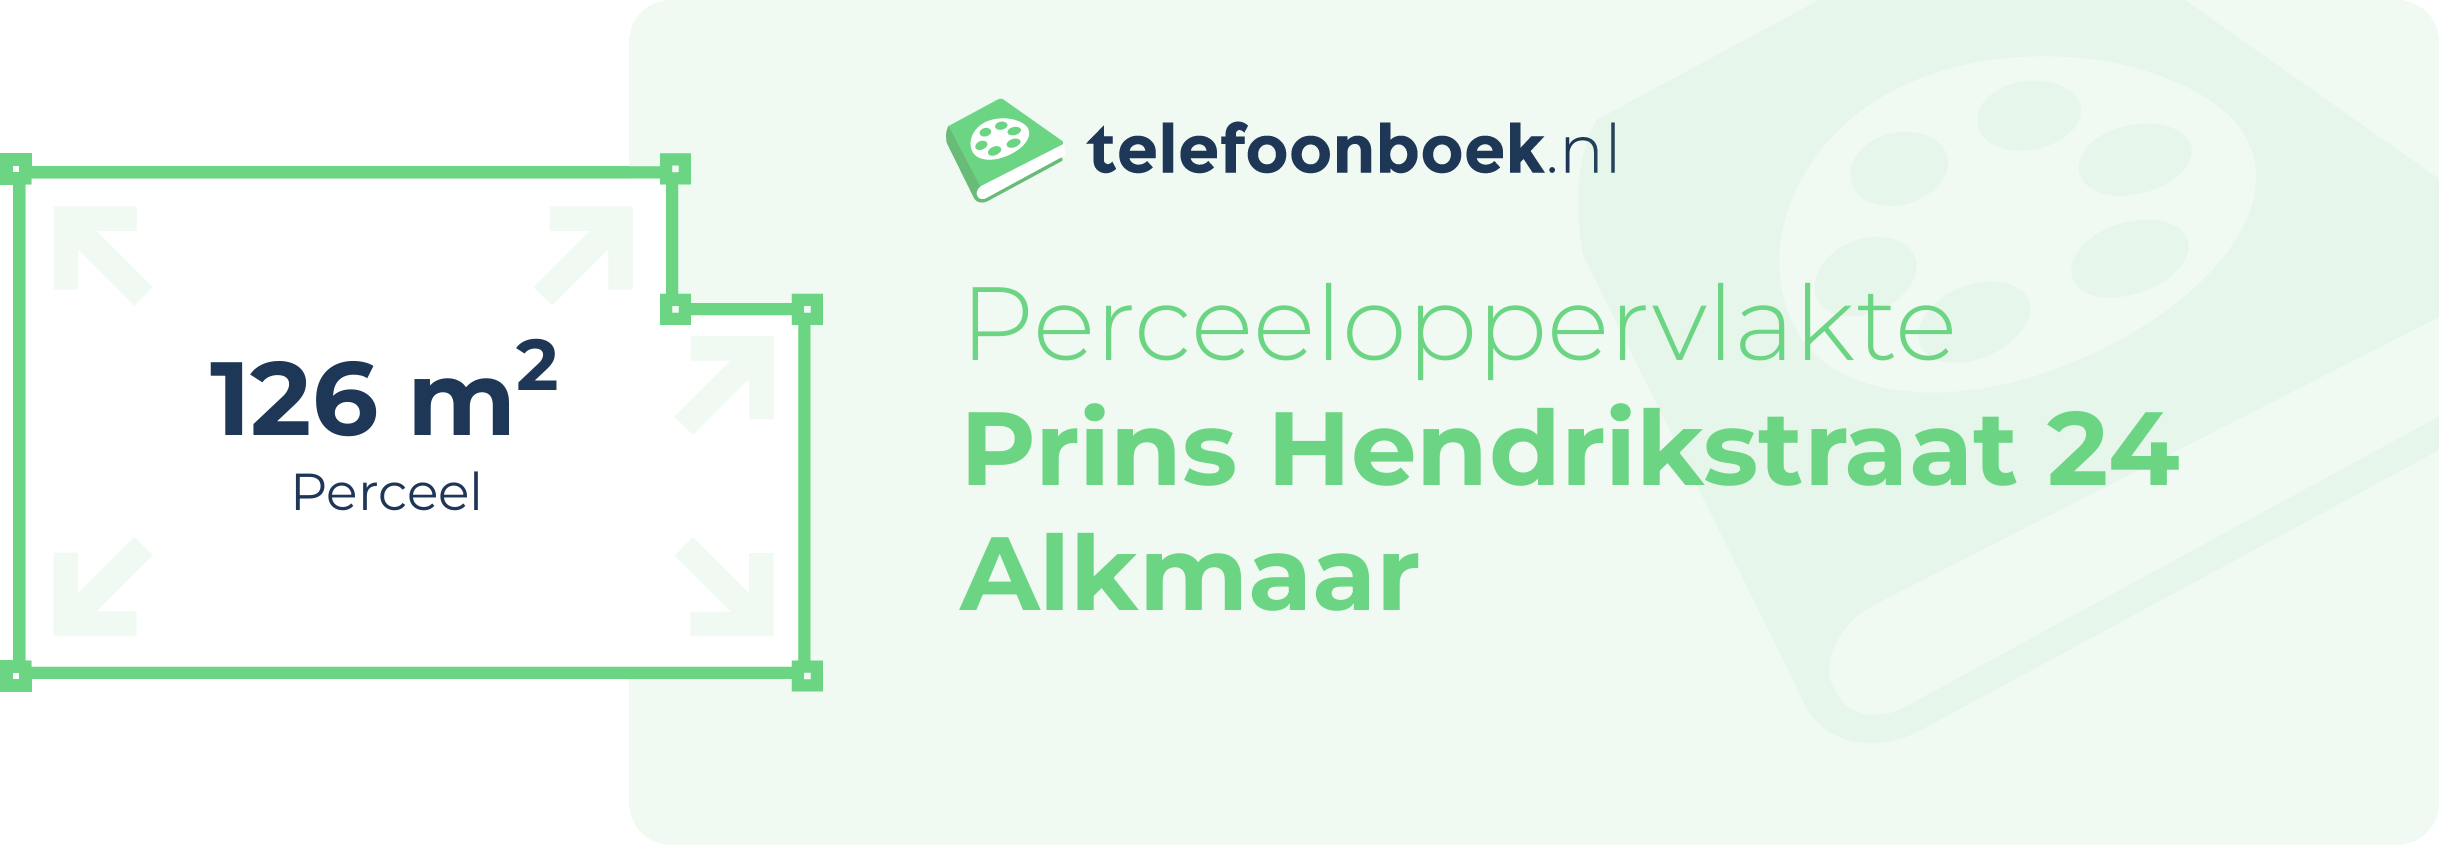 Perceeloppervlakte Prins Hendrikstraat 24 Alkmaar